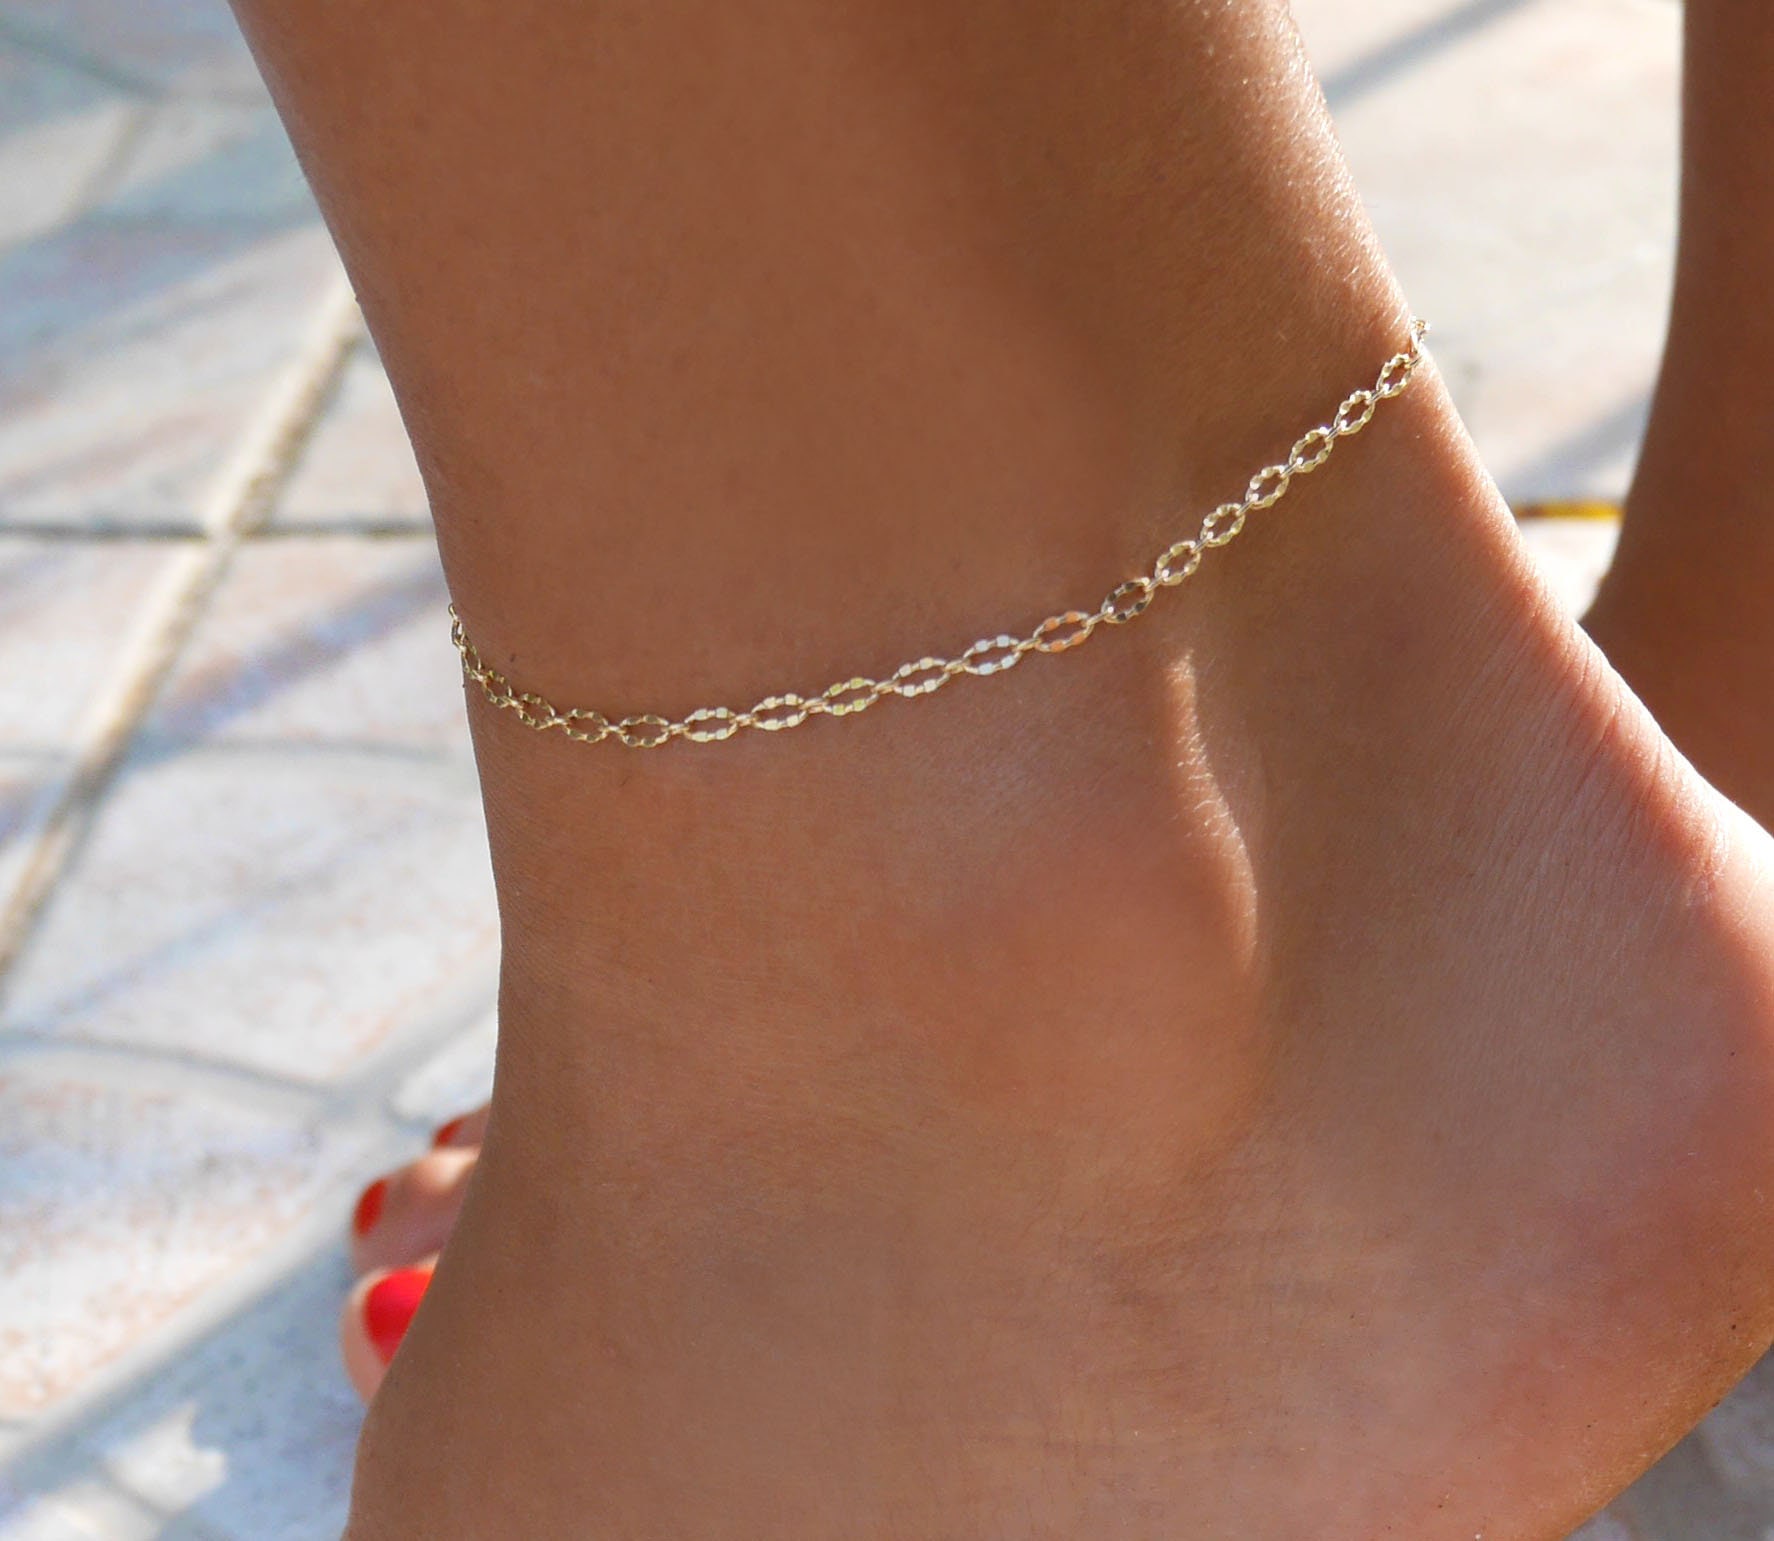 Buy Simsly Boho Anklet Sequins Ankle Bracelet Gold Foot